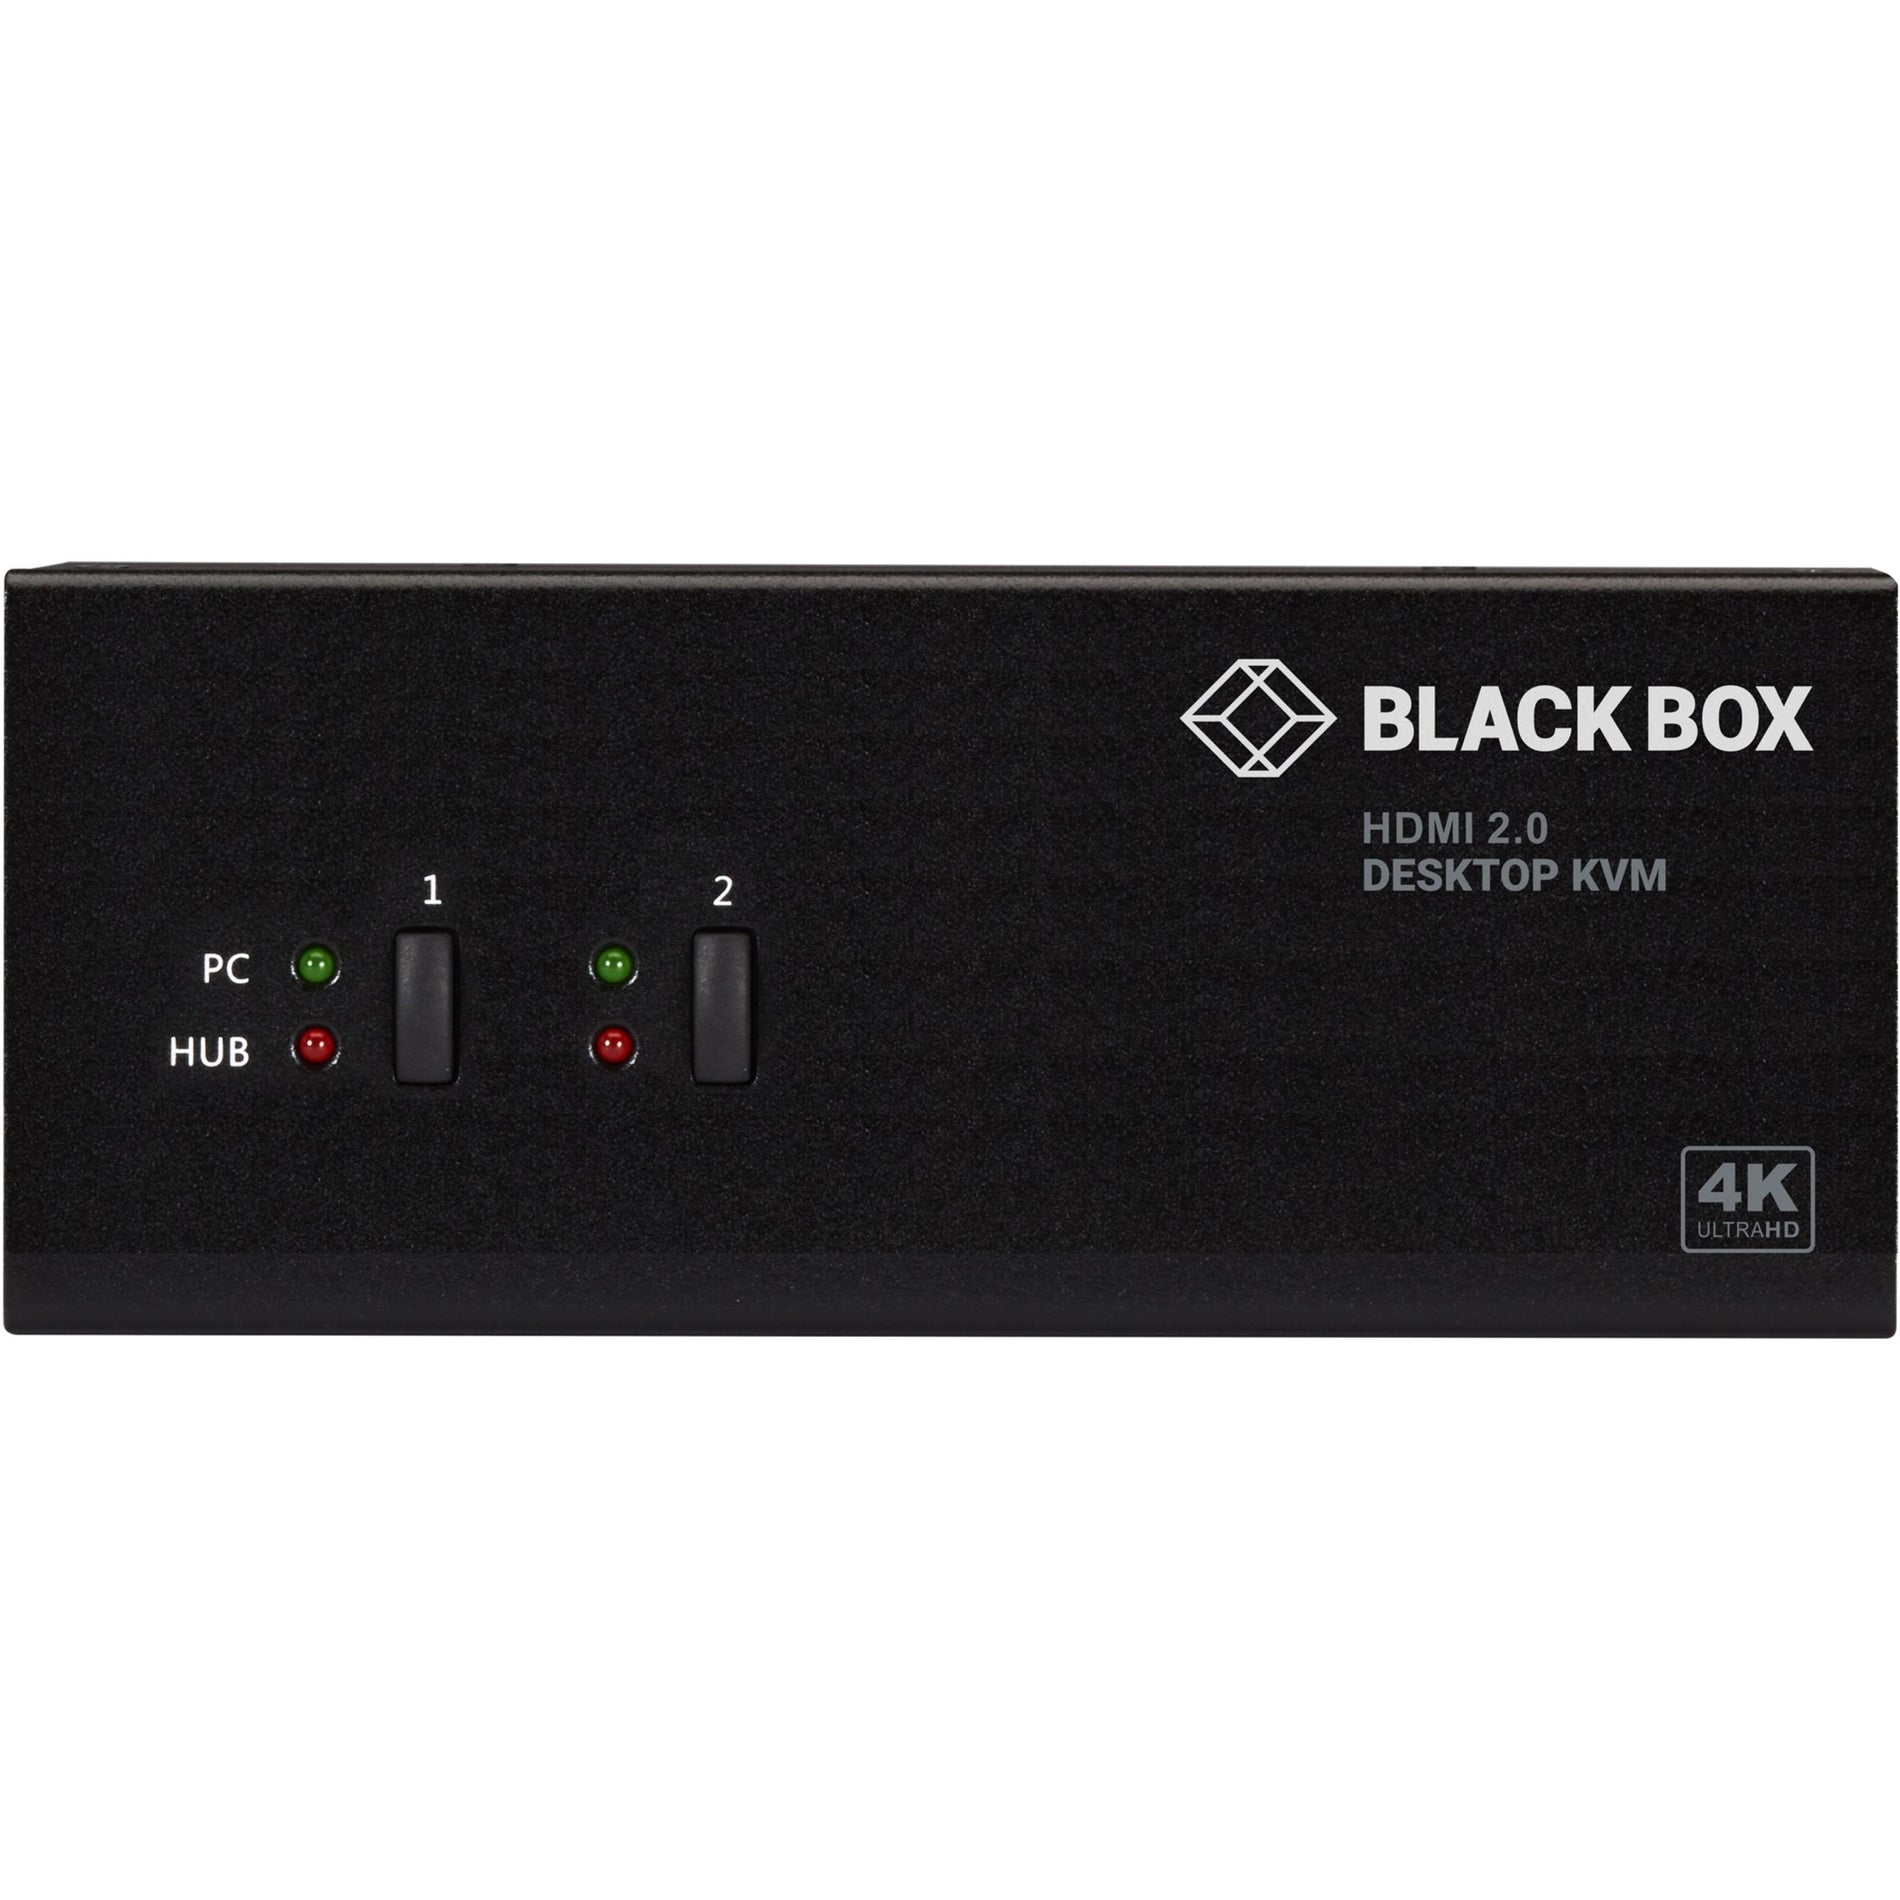 黑盒子KV6222H KVM交换机 - 2端口，双显示器，HDMI 2.0，4K 60Hz，USB 3.0集线器，音频，共享两台计算机的两个4K显示器  品牌名：黑盒子